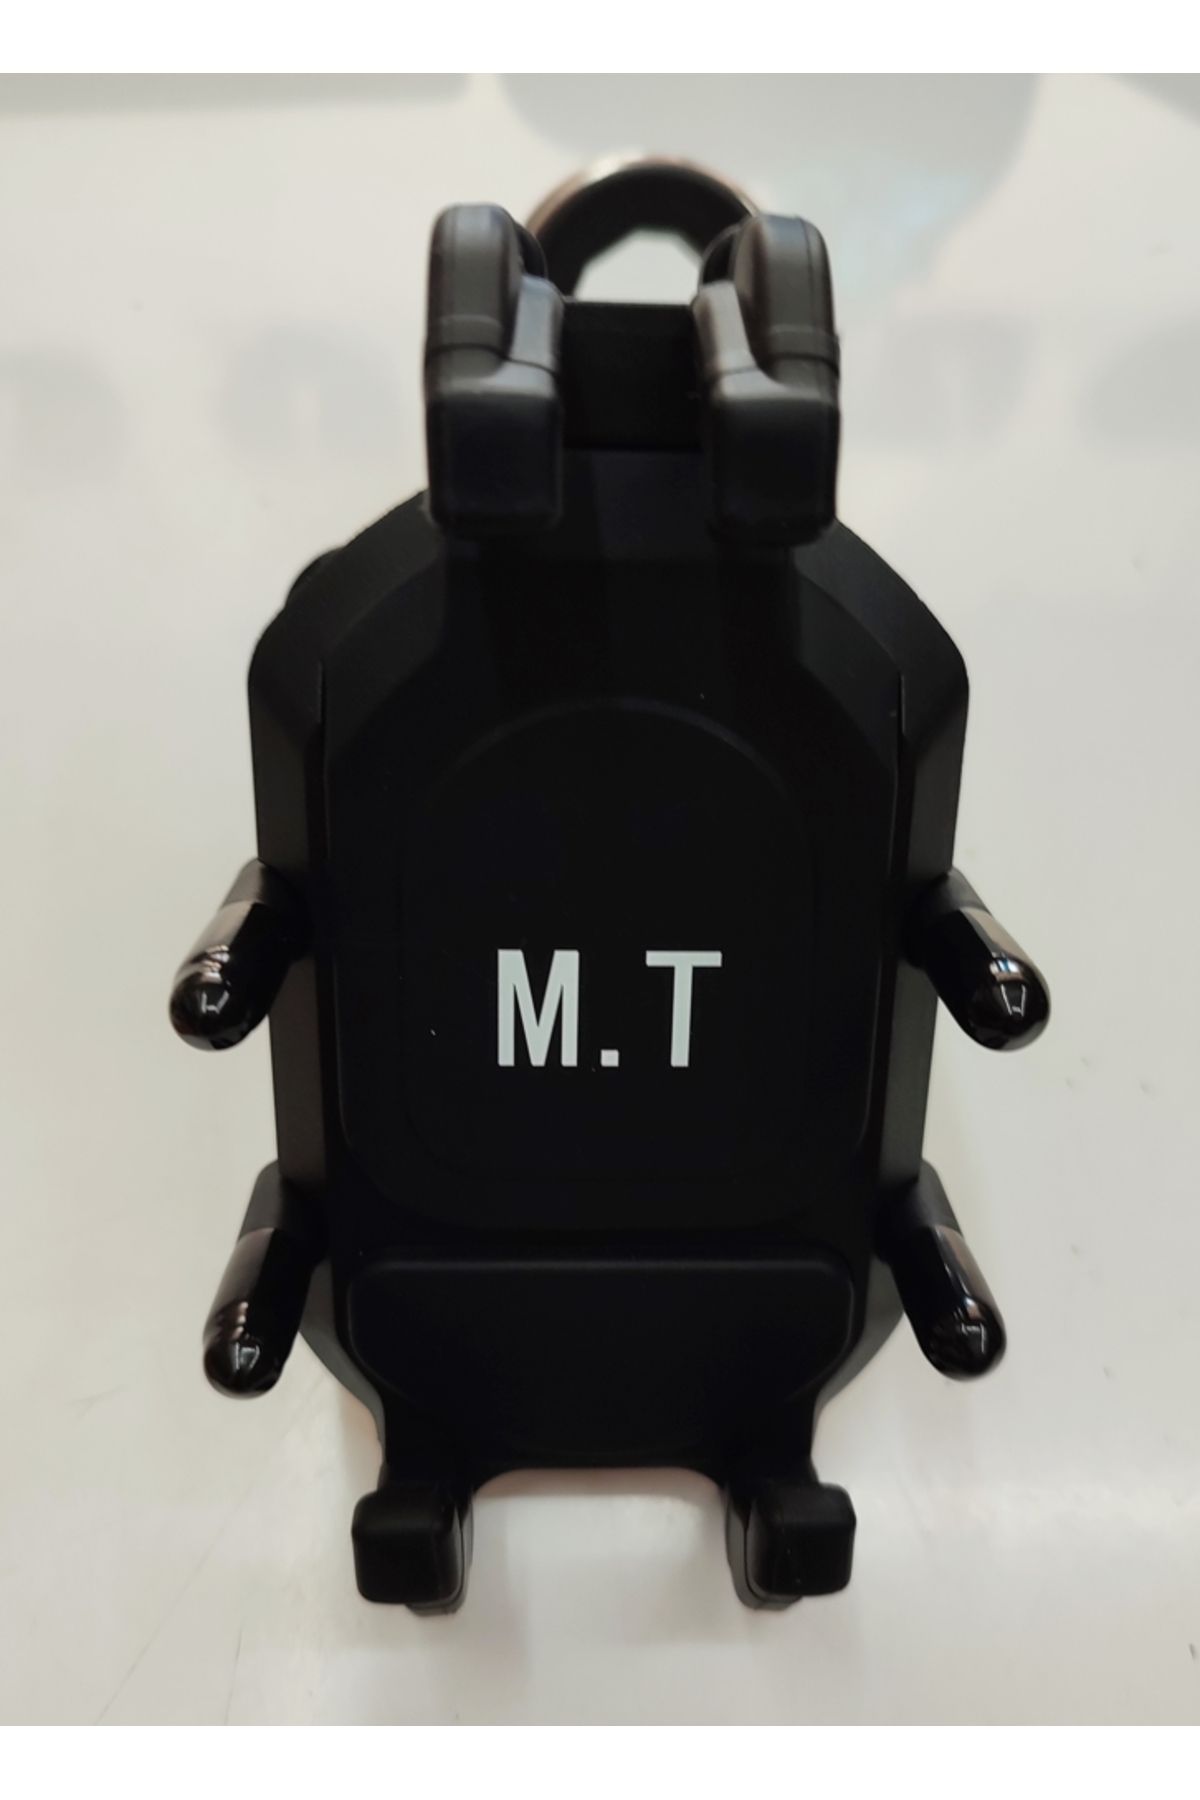 MT Motosiklet Telefon Tutucu Titreşim Önleyici M.T Gidon Bağlantılı